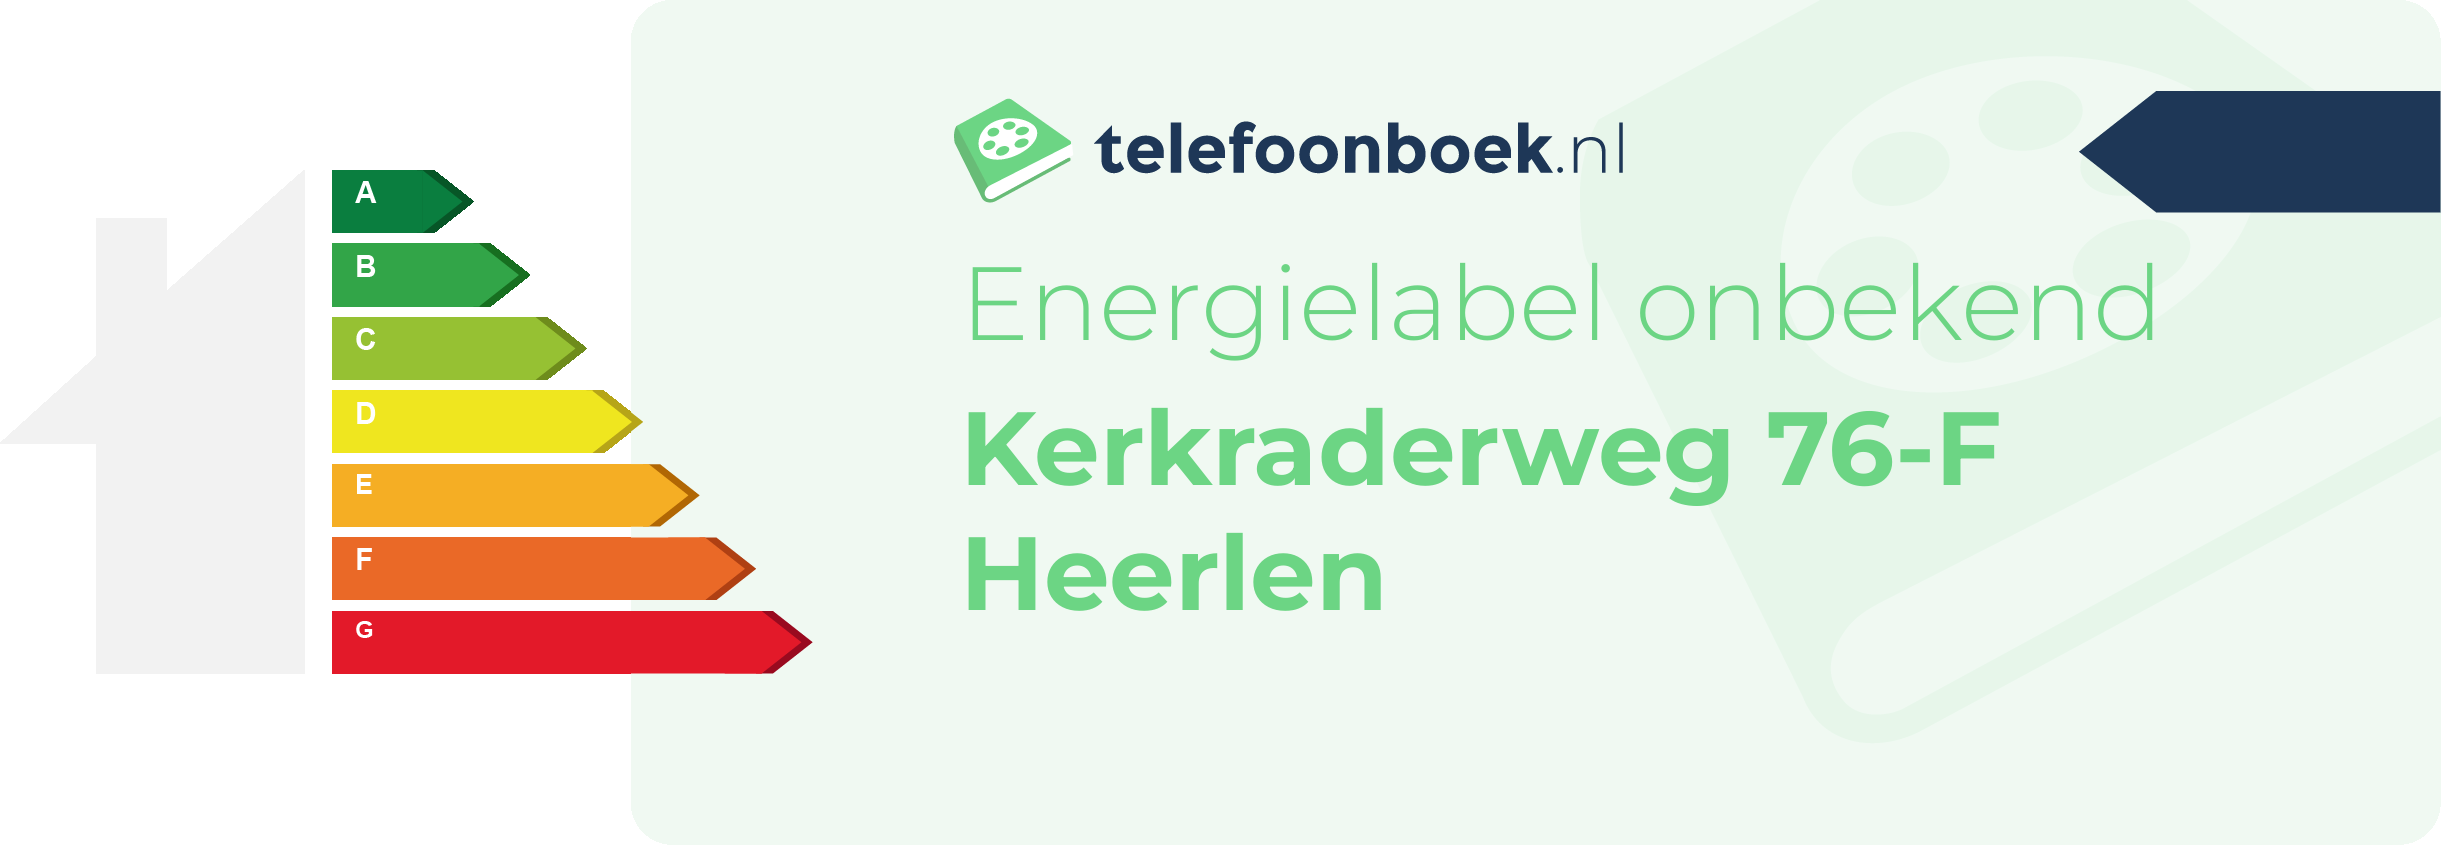 Energielabel Kerkraderweg 76-F Heerlen